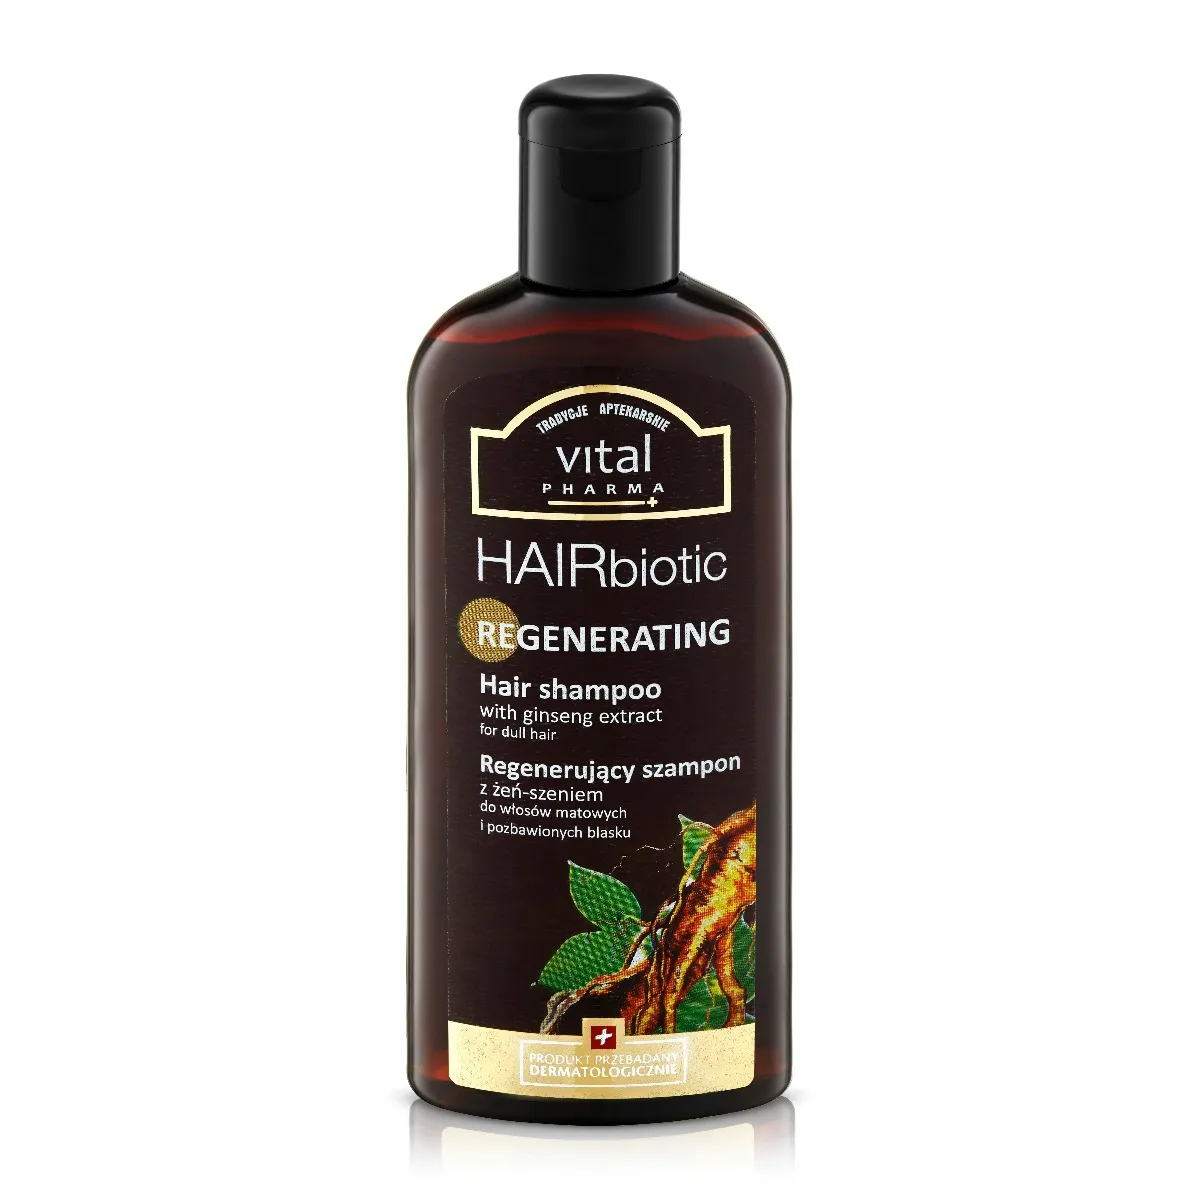 Vital Pharma Plus Hairbiotic regenerujący szampon do włosów z żeń-szeniem, 250 ml